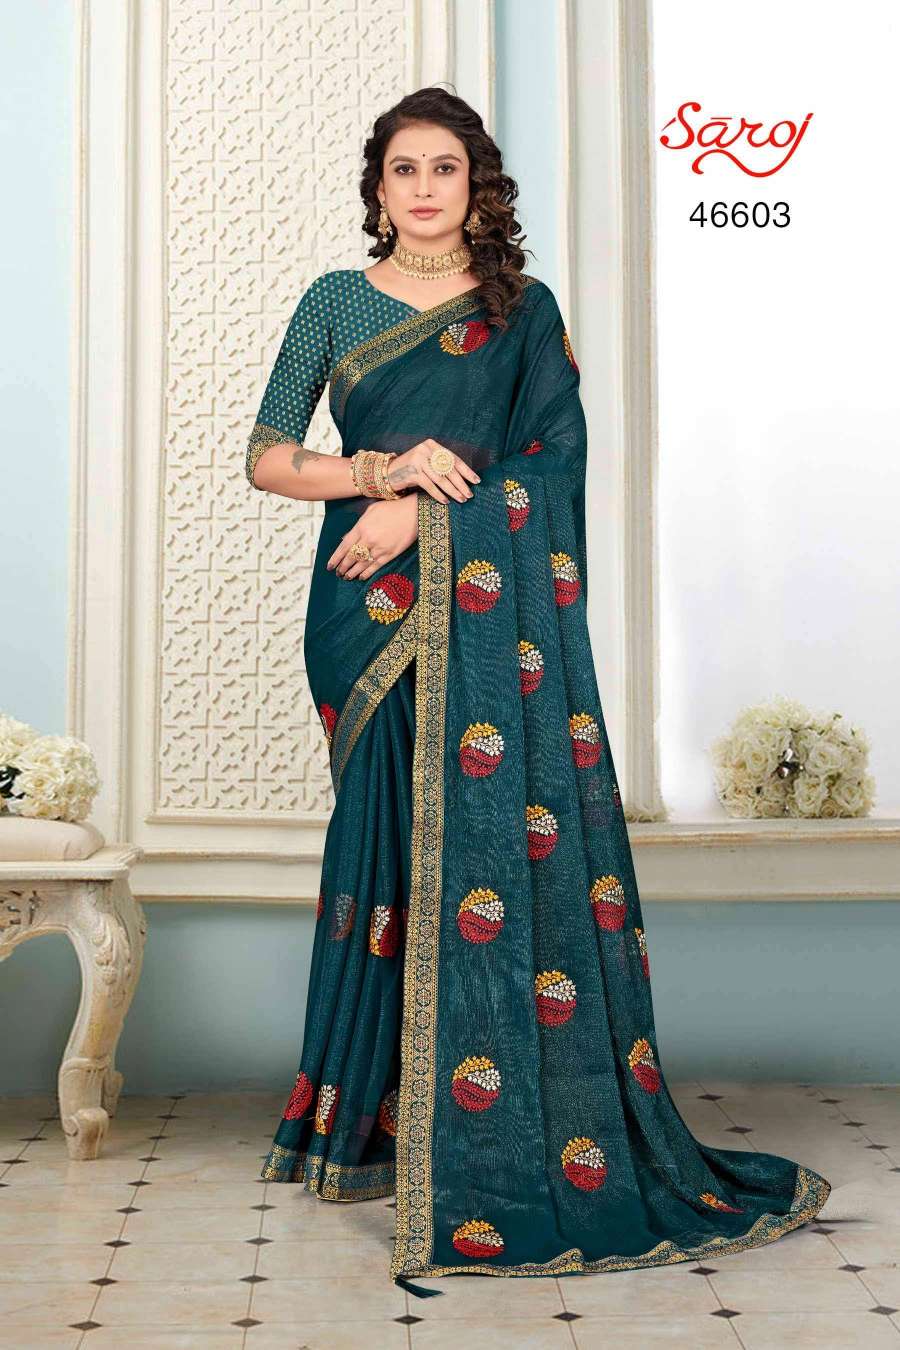 Saroj textile presents Shraddha vol 1 casual sarees catalogue